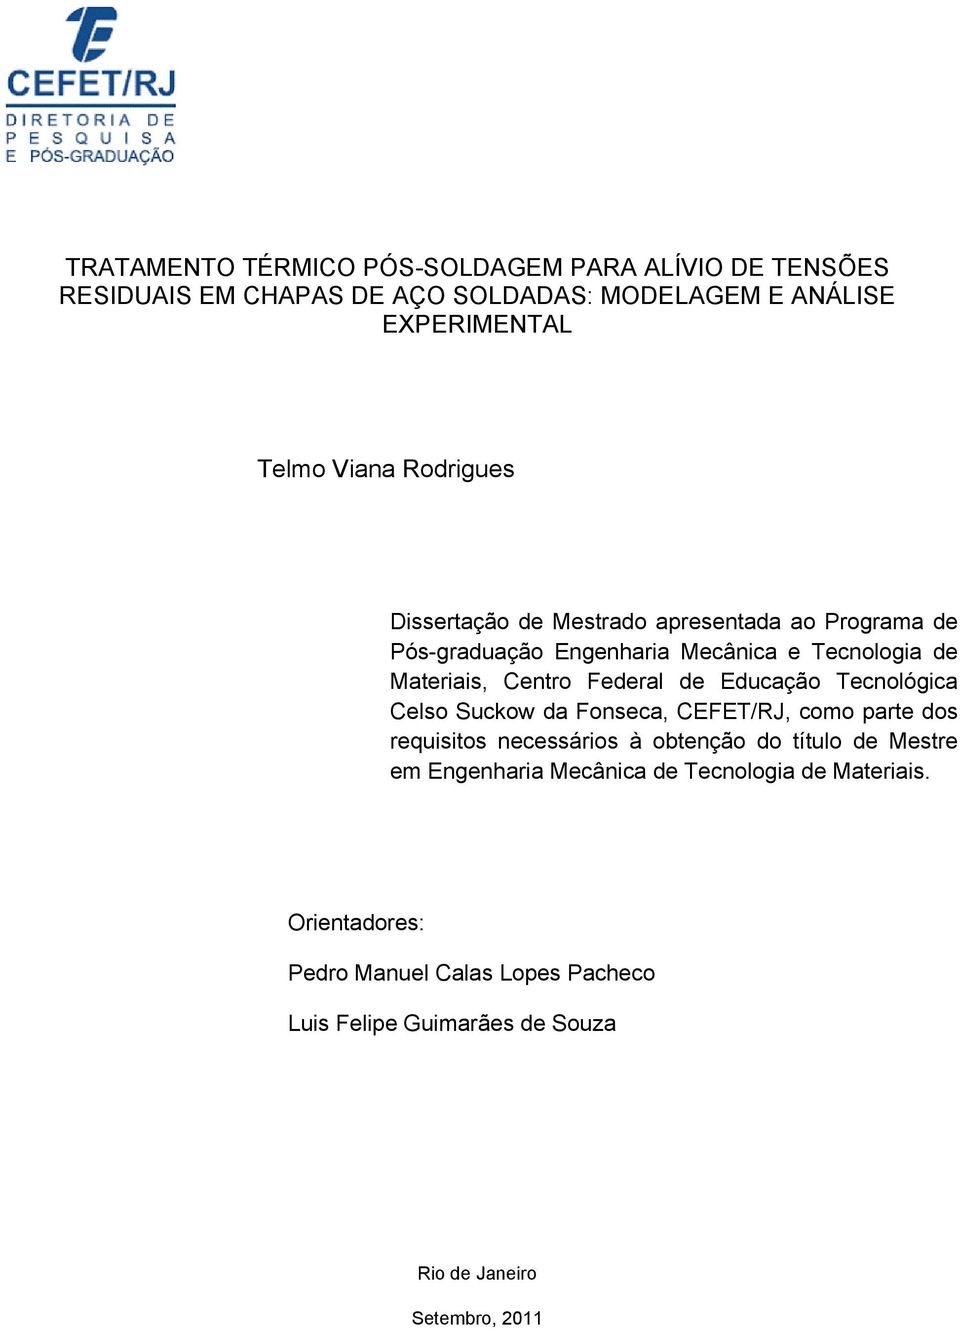 Educação Tecnológica Celso Suckow da Fonseca, CEFET/RJ, como parte dos requisitos necessários à obtenção do título de Mestre em Engenharia